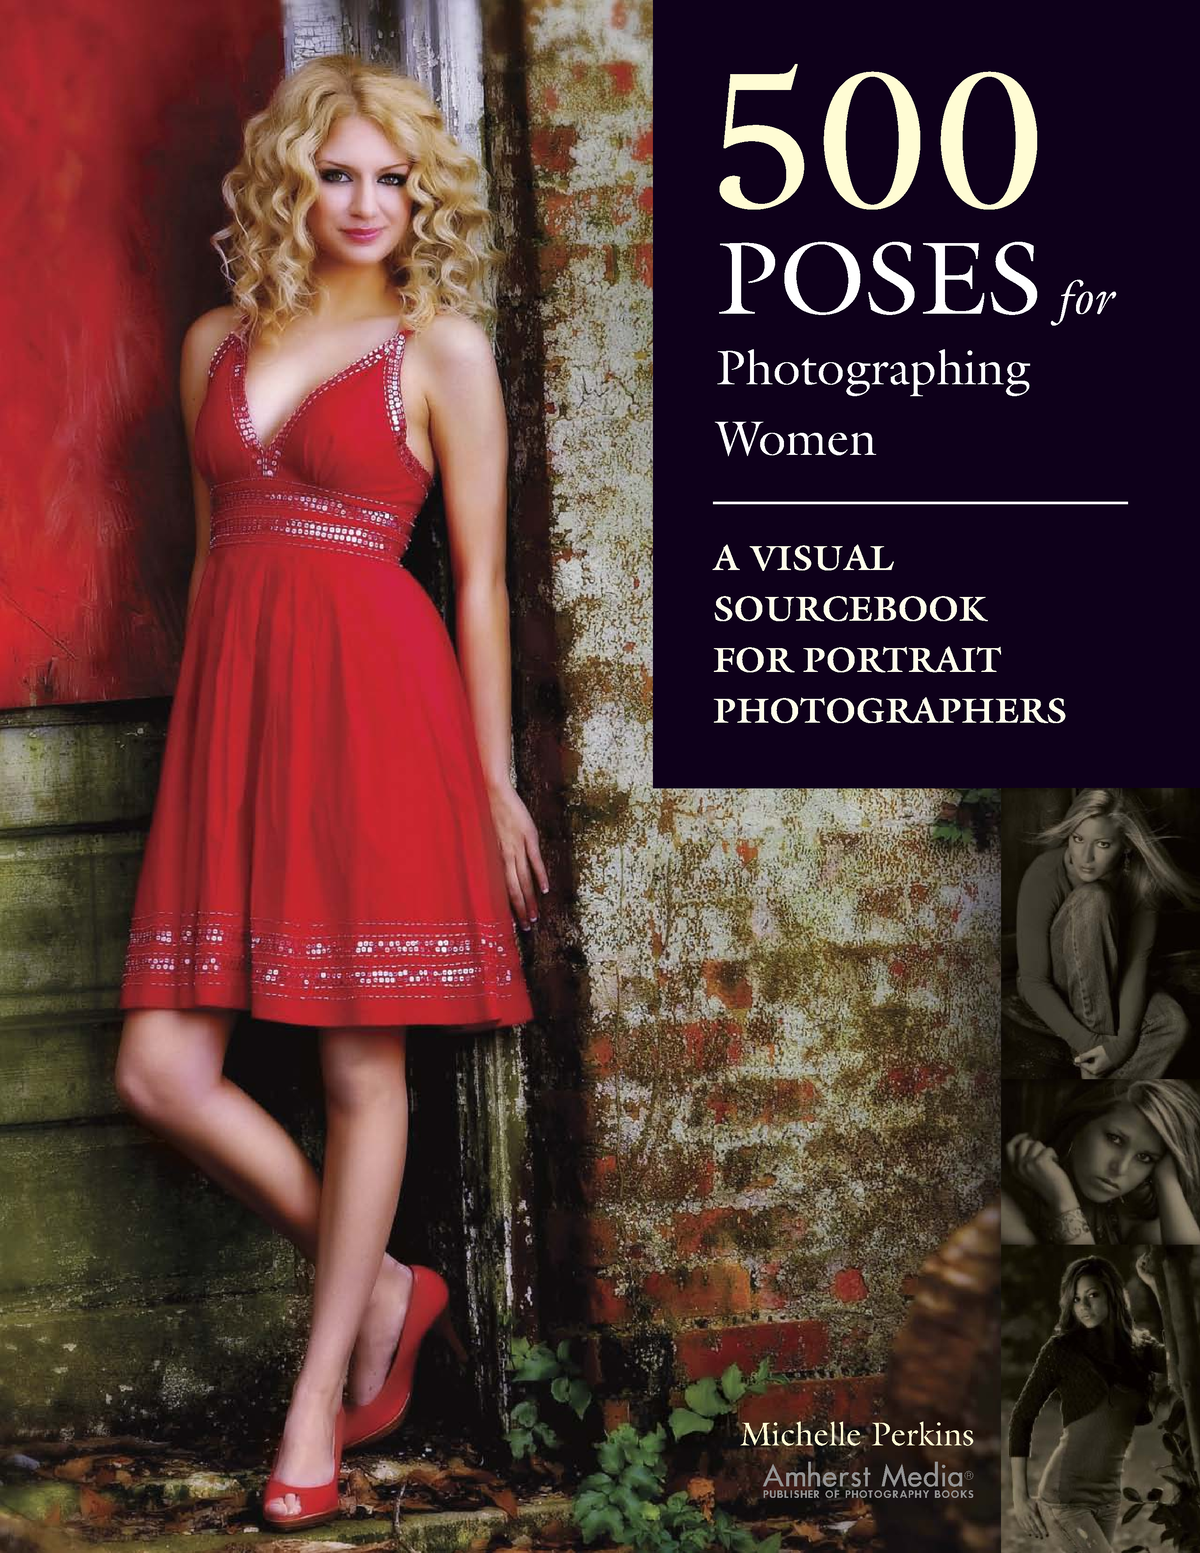 Guia de poses 500 poses - Fotografia de grupos by Joelson Cardozo - Issuu